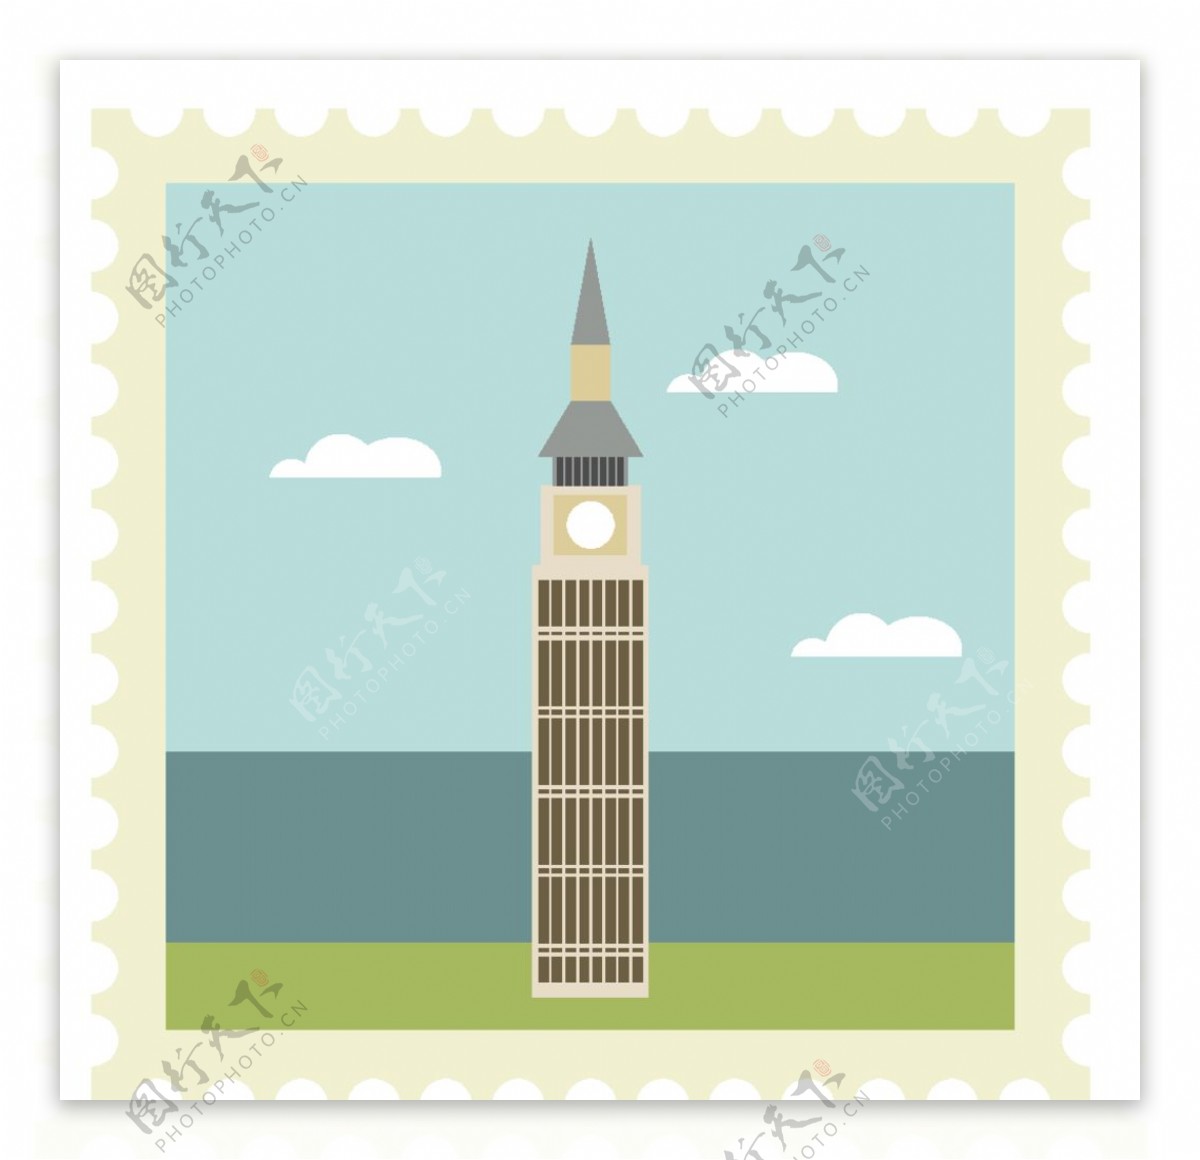 伦敦大本钟邮票